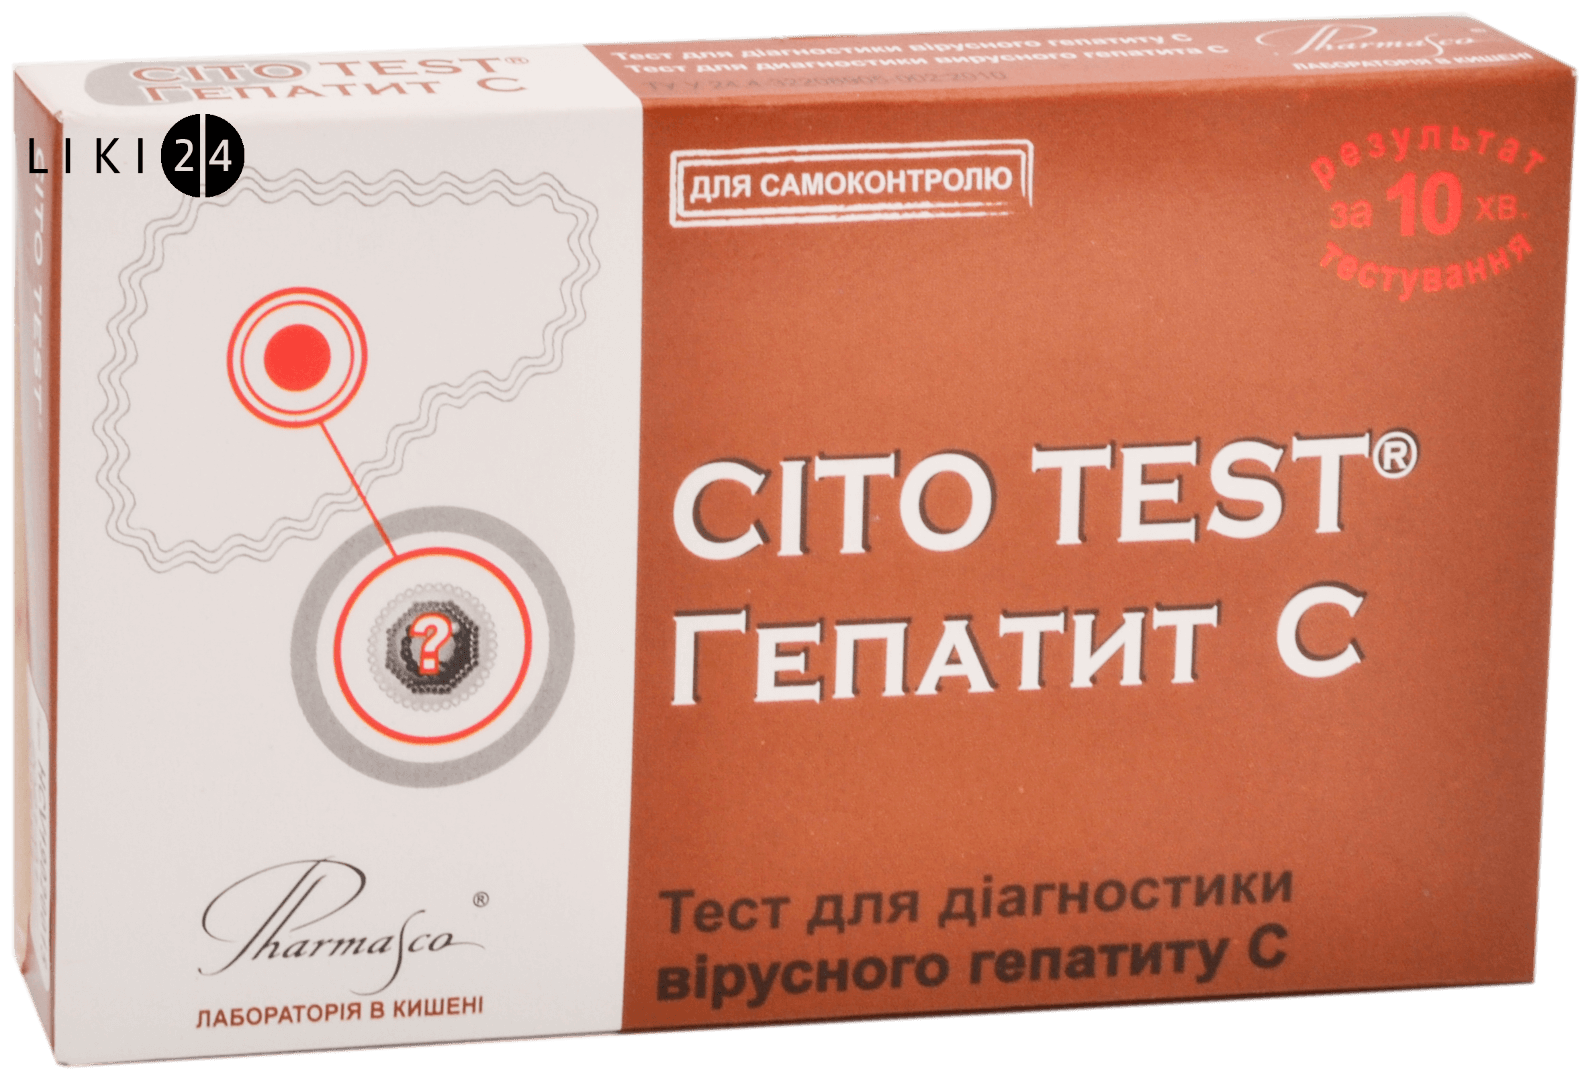 

Тест-система Cito Test HCV для визначення вірусу гепатиту С в крові, тест